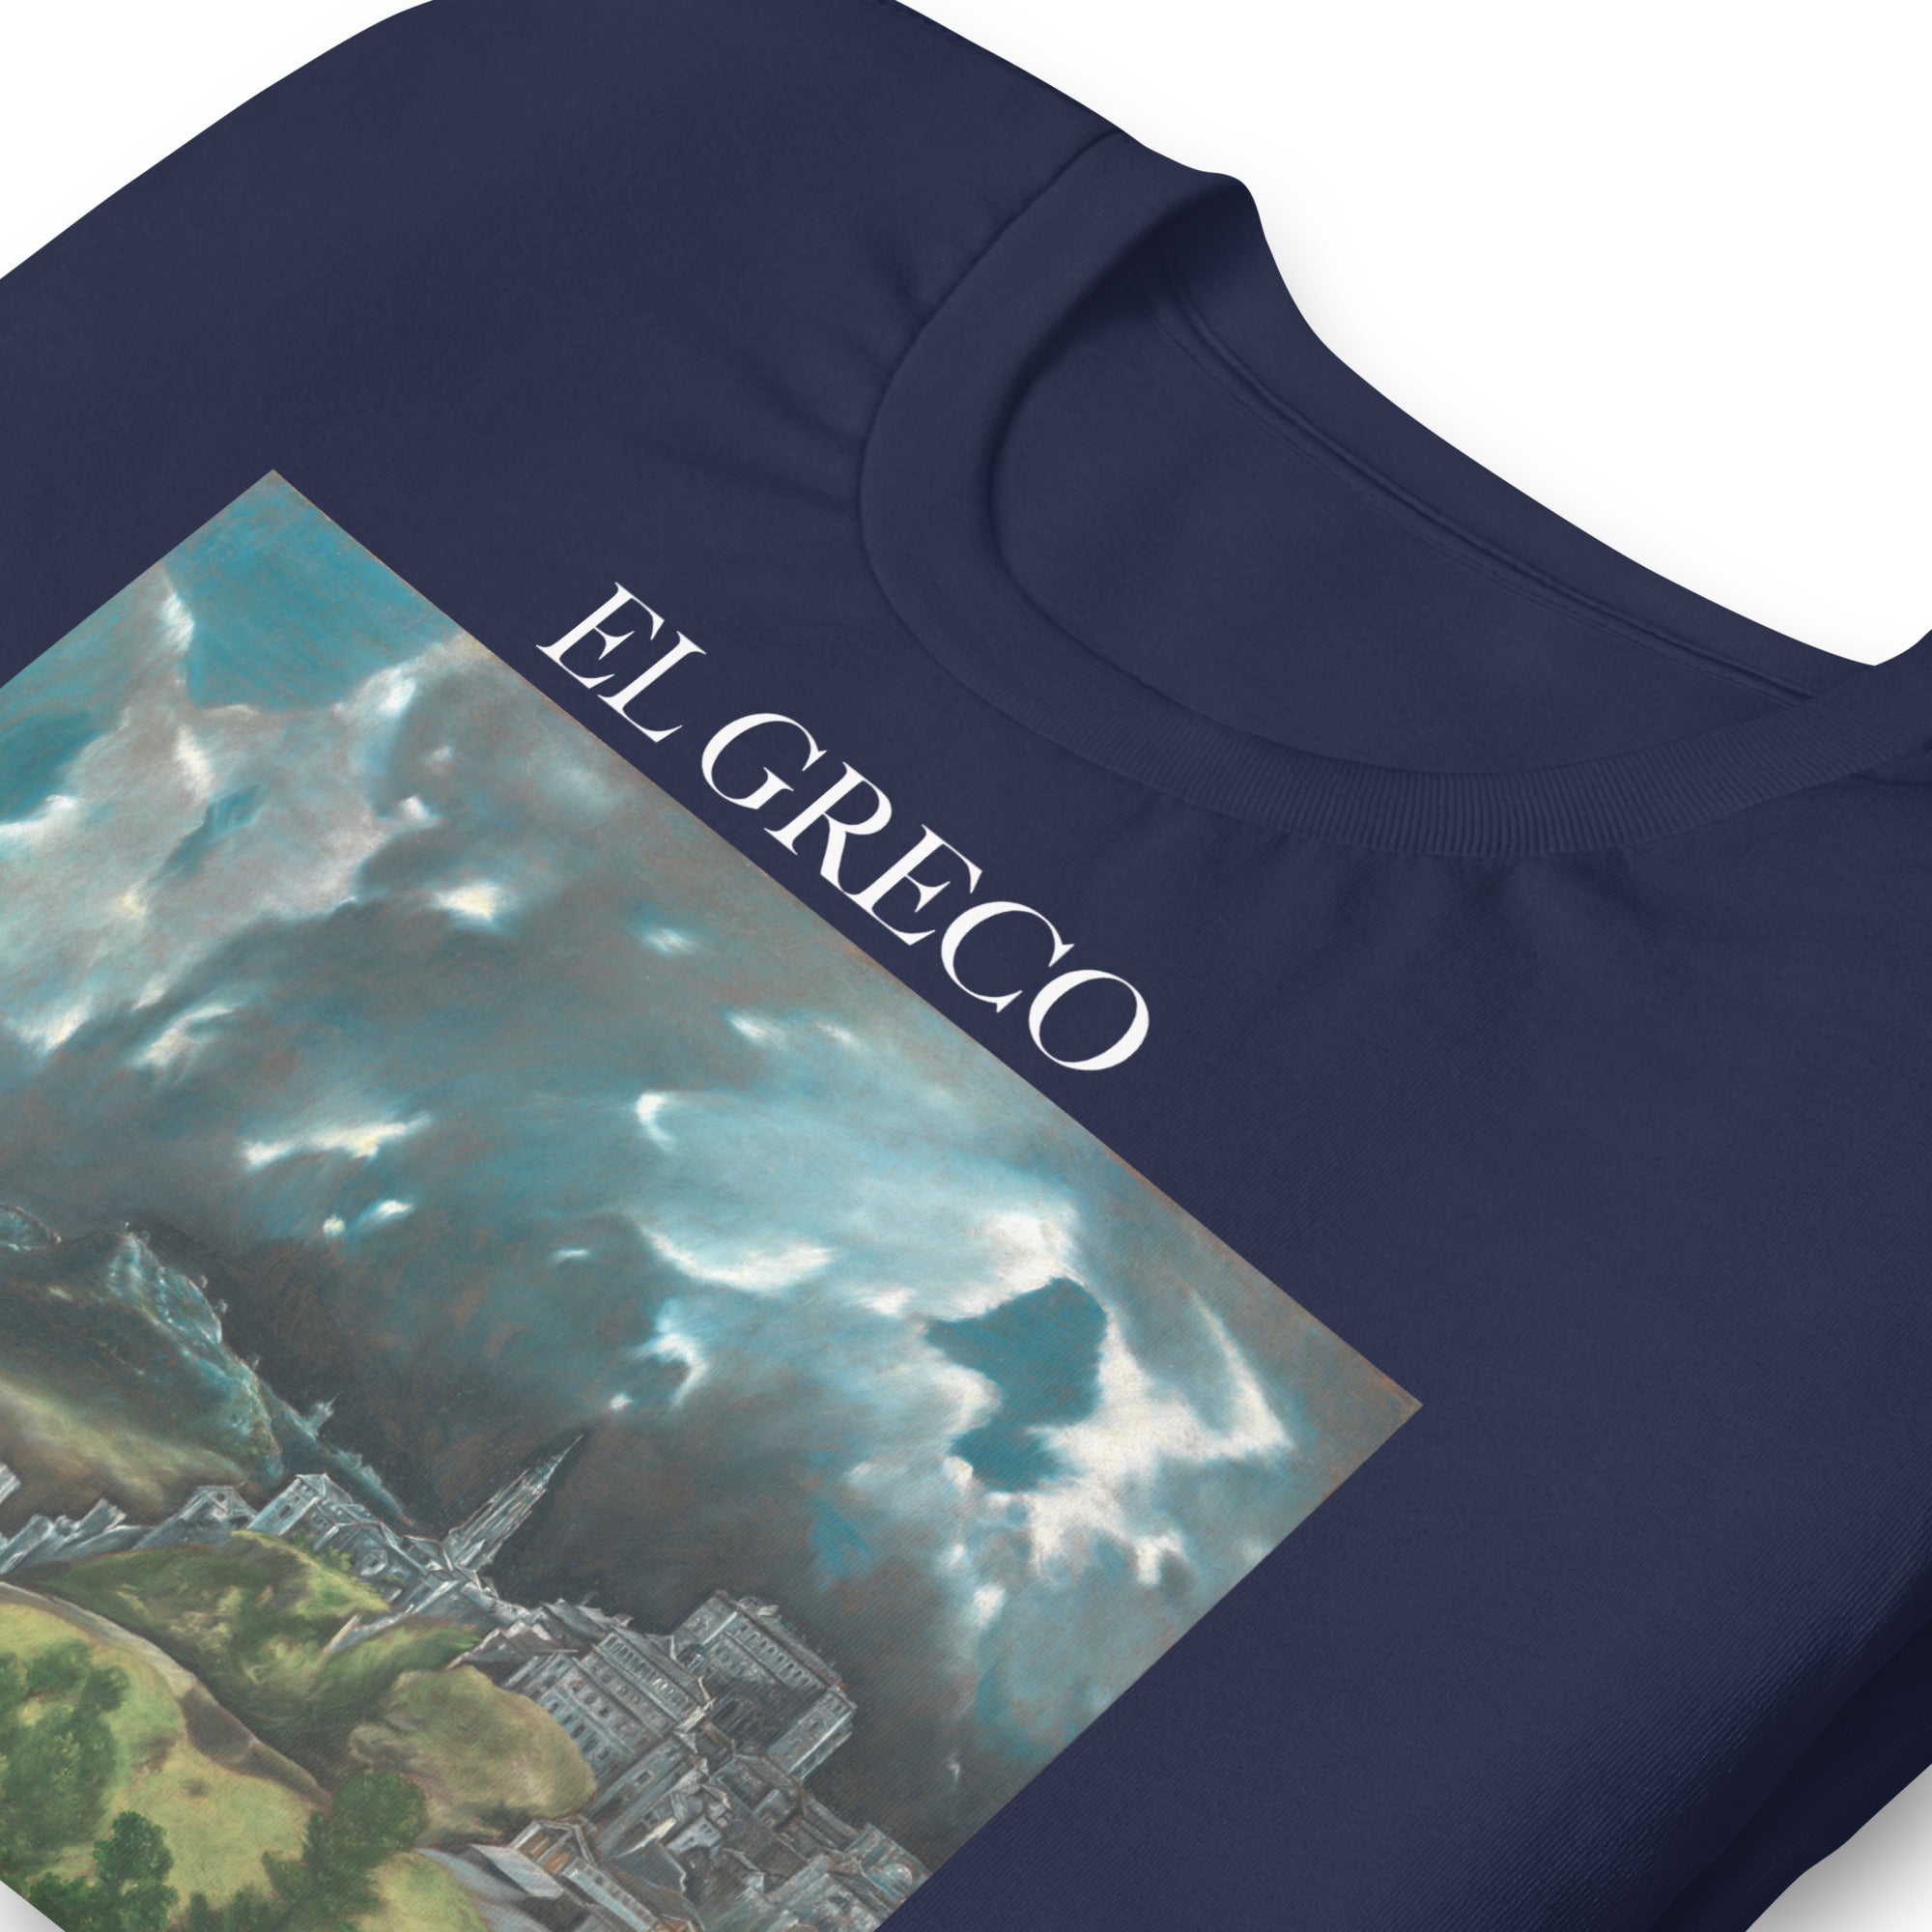 T-Shirt mit berühmtem Gemälde „Ansicht von Toledo“ von El Greco | Unisex-T-Shirt mit klassischem Kunst-Motiv